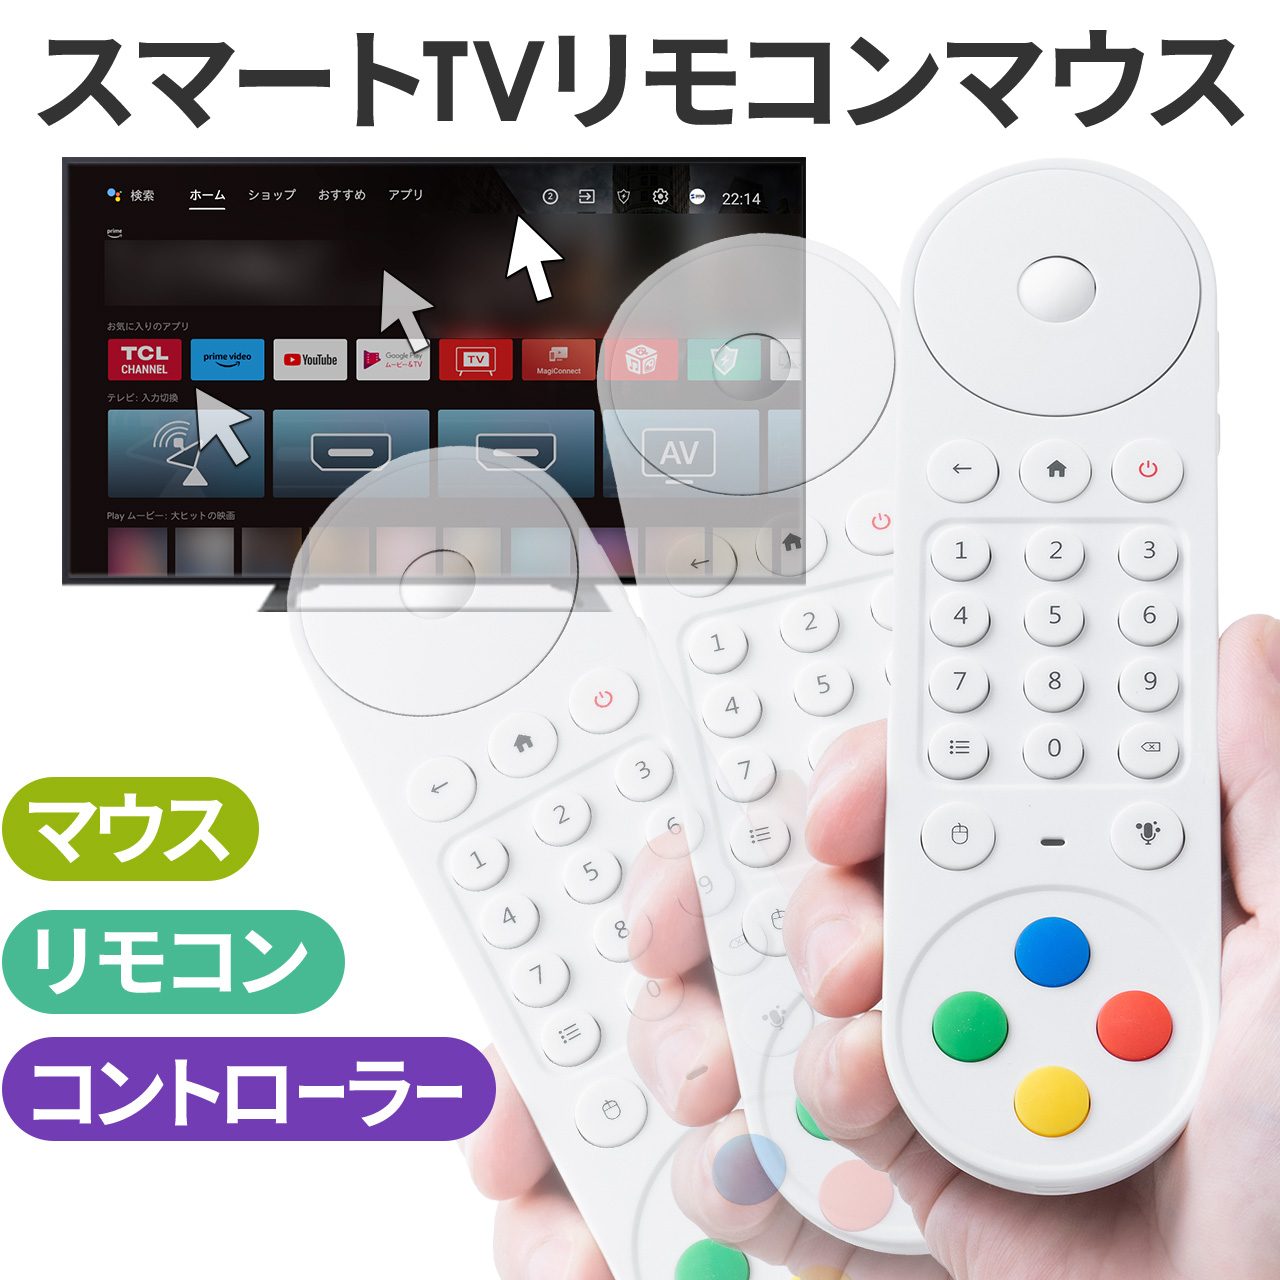 マジックリモコン スマートTV 用 リモコン Bluetooth &amp; USB A 接続 ボタン割り当て マウスリモコン ゲームコントローラー 汎用 androidTV テレビ400-TVSMART